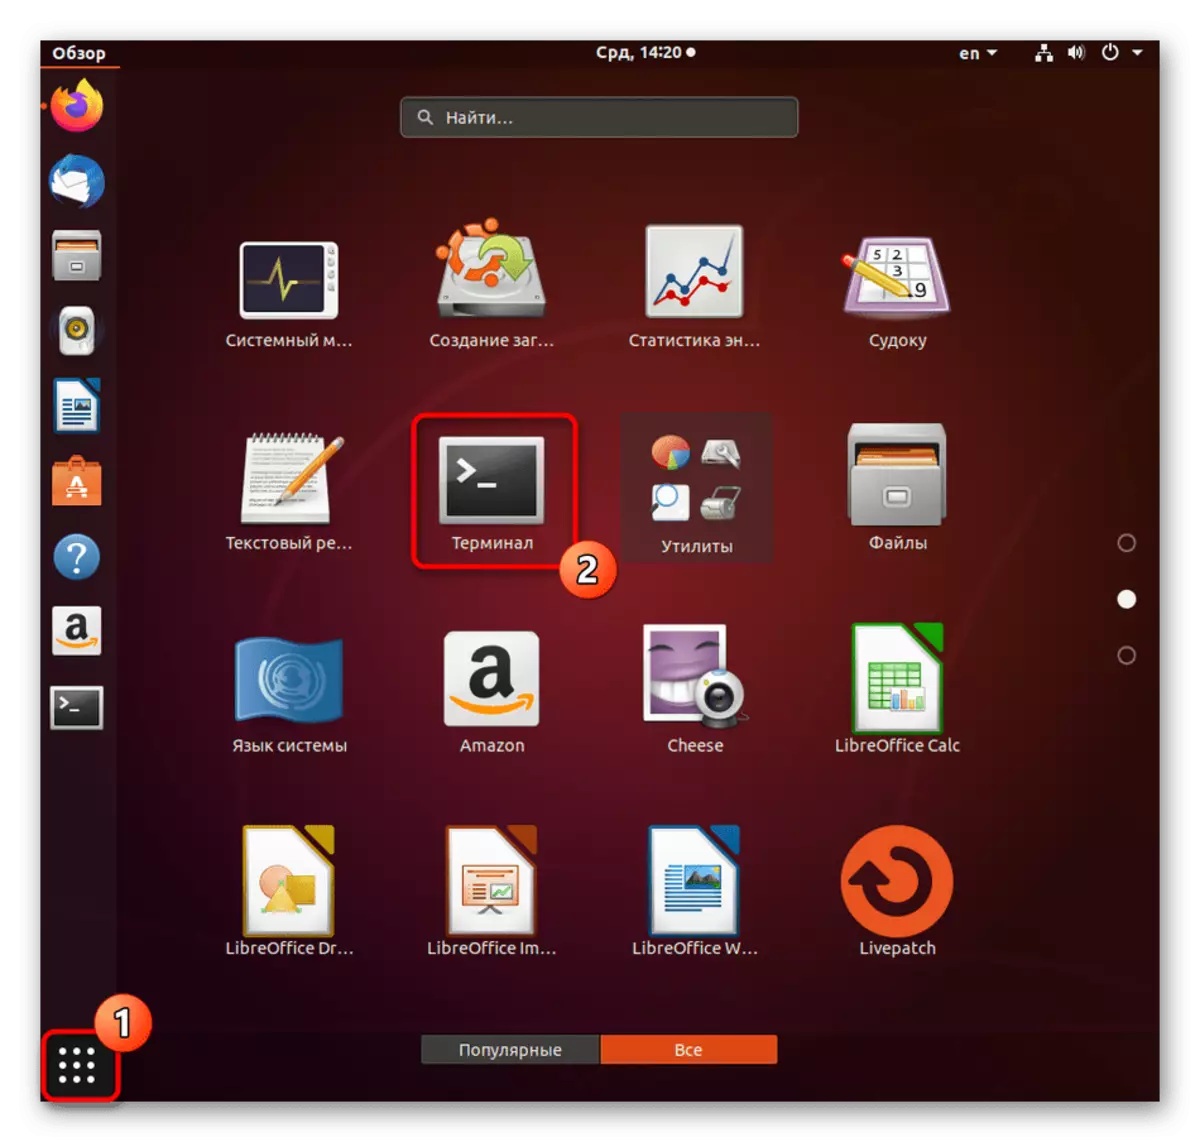 Simula ng terminal upang i-verify ang kasalukuyang bersyon ng kernel sa Ubuntu